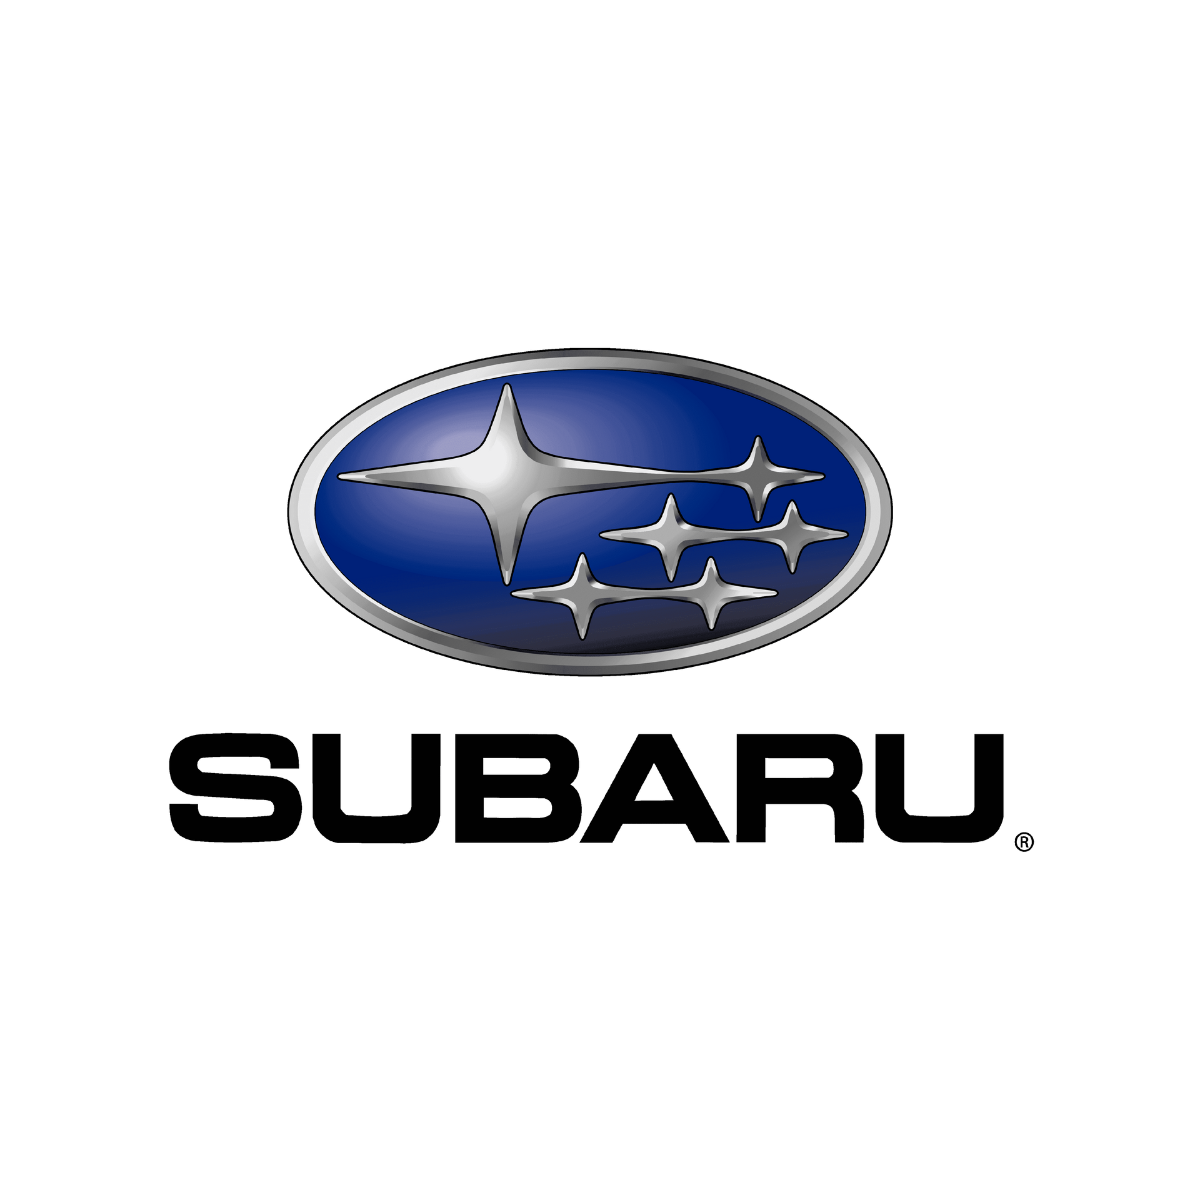 Les logos des marques de voiture